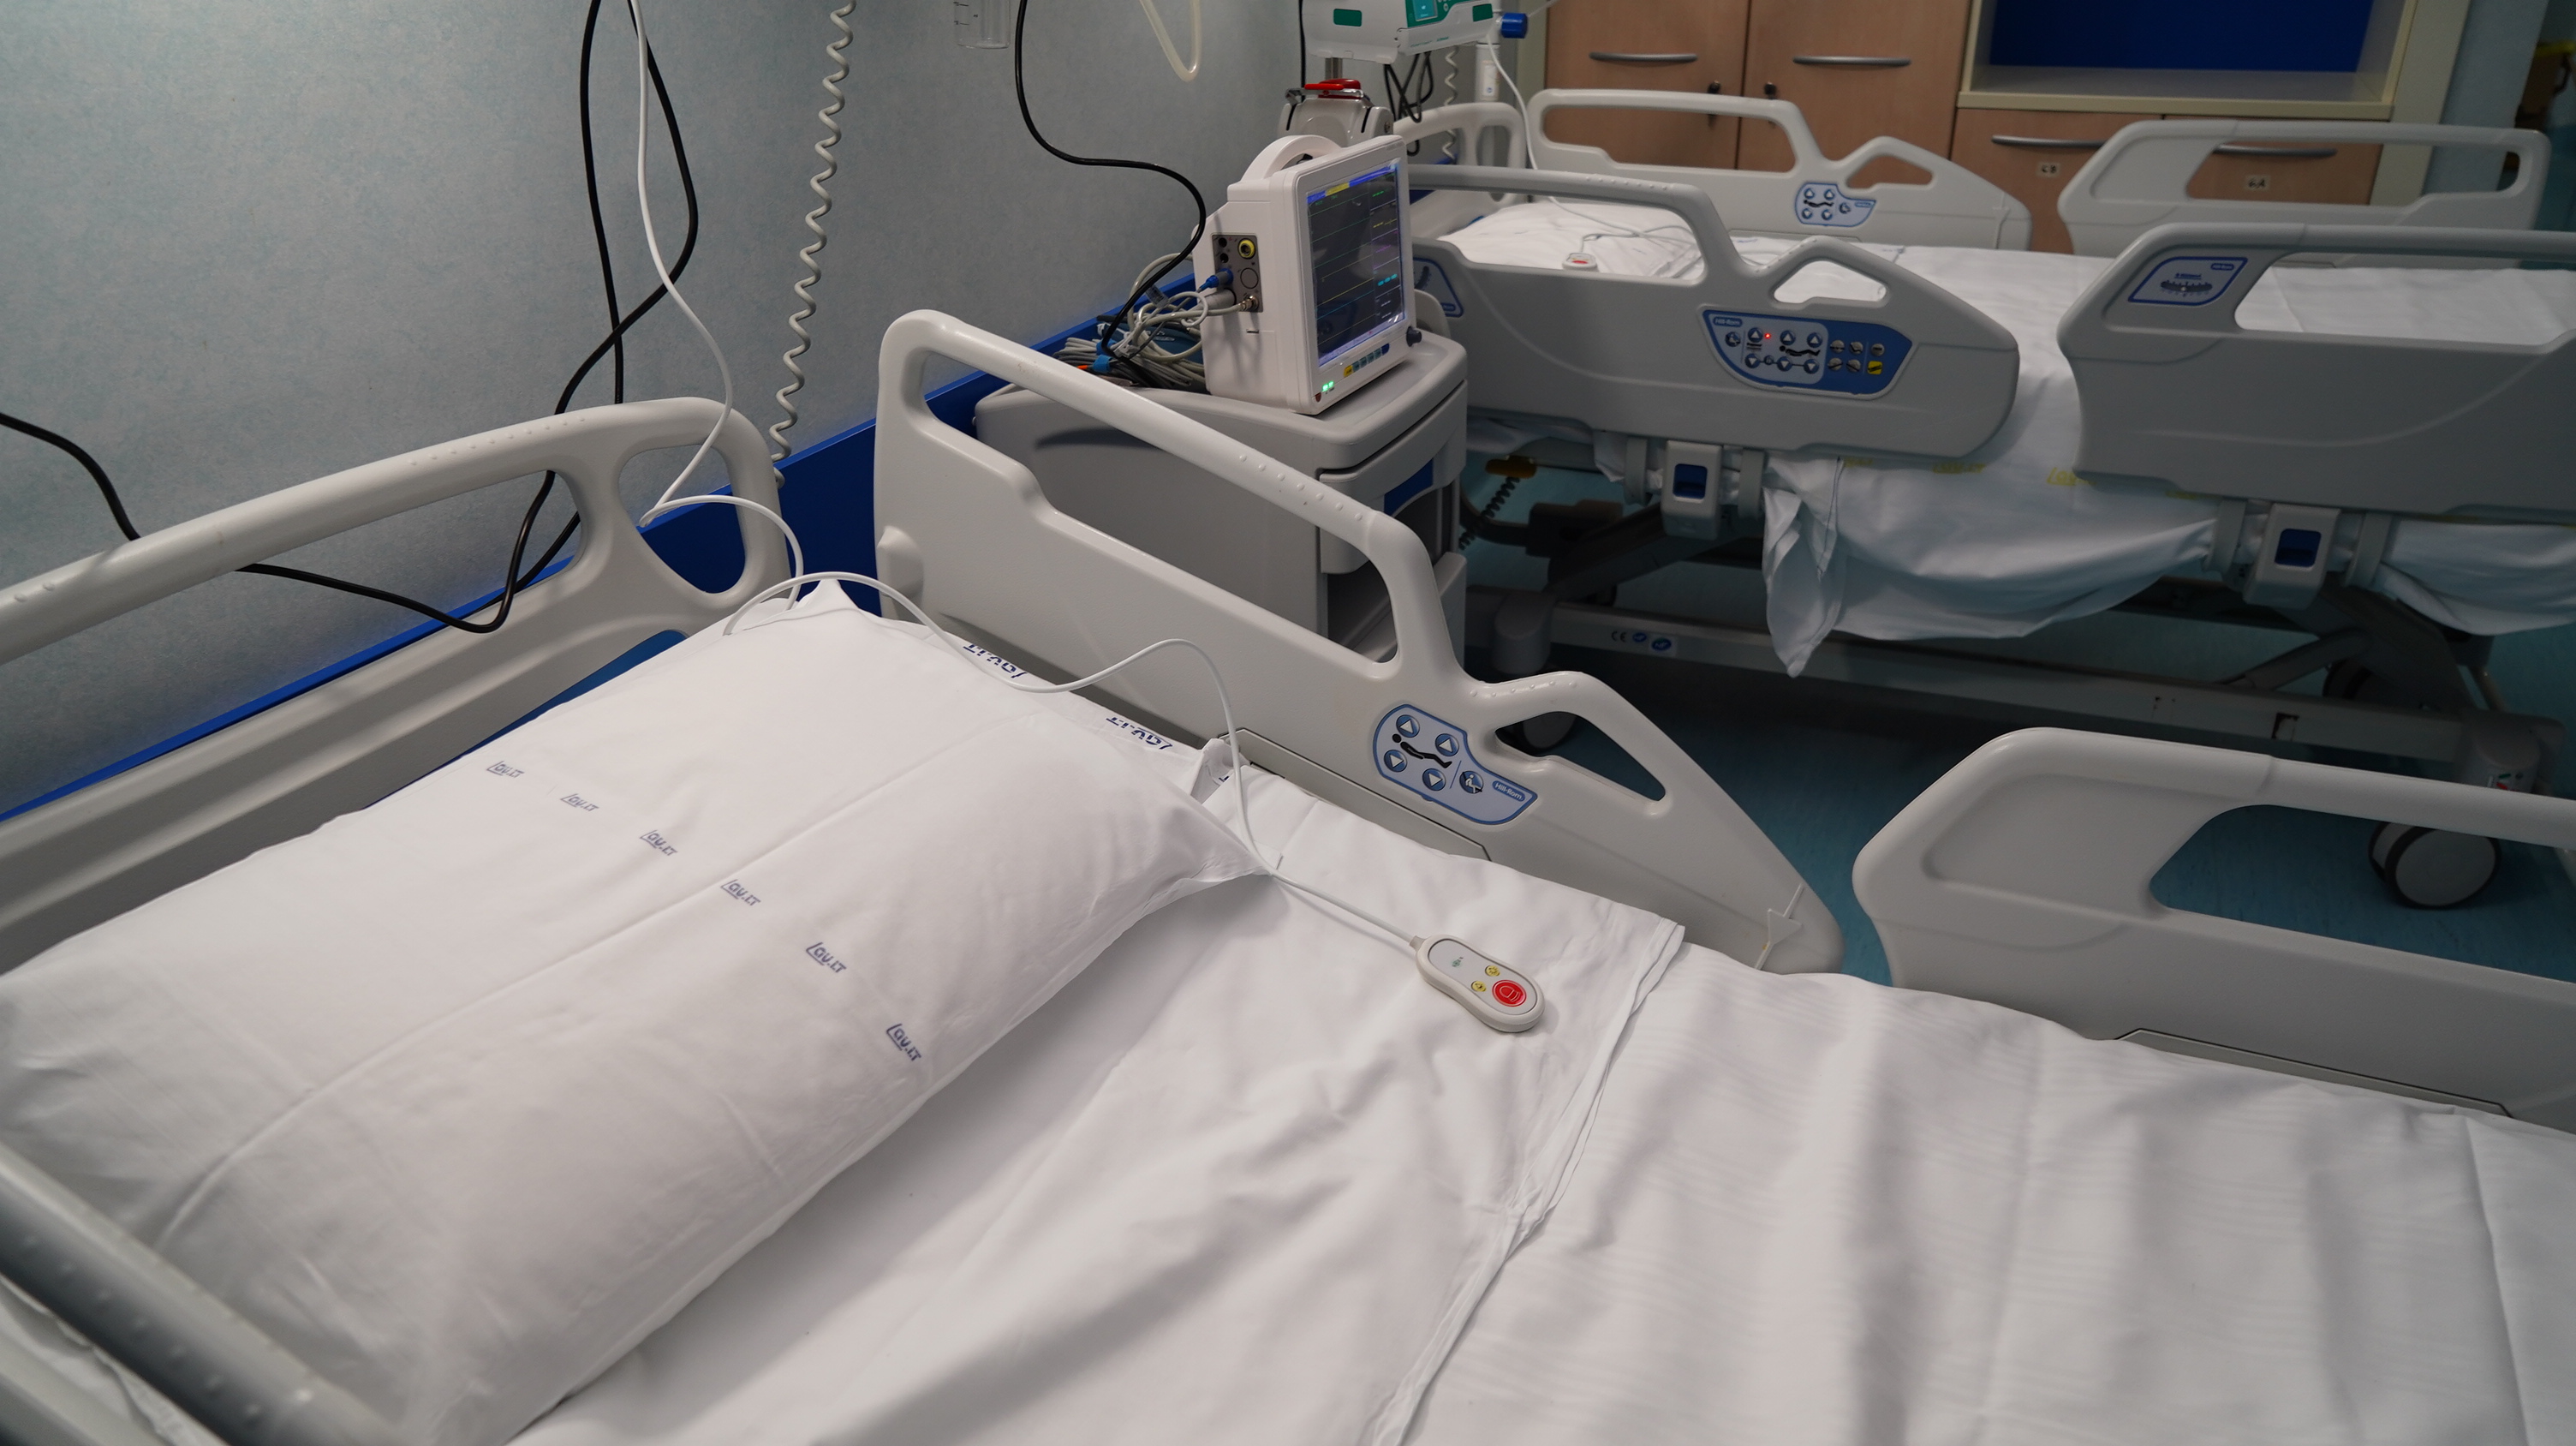 Galleria Apre il reparto Covid dell'Ospedale di Altamura: attivati 20 posti letto, ampliabili sino a 60 - Diapositiva 9 di 9